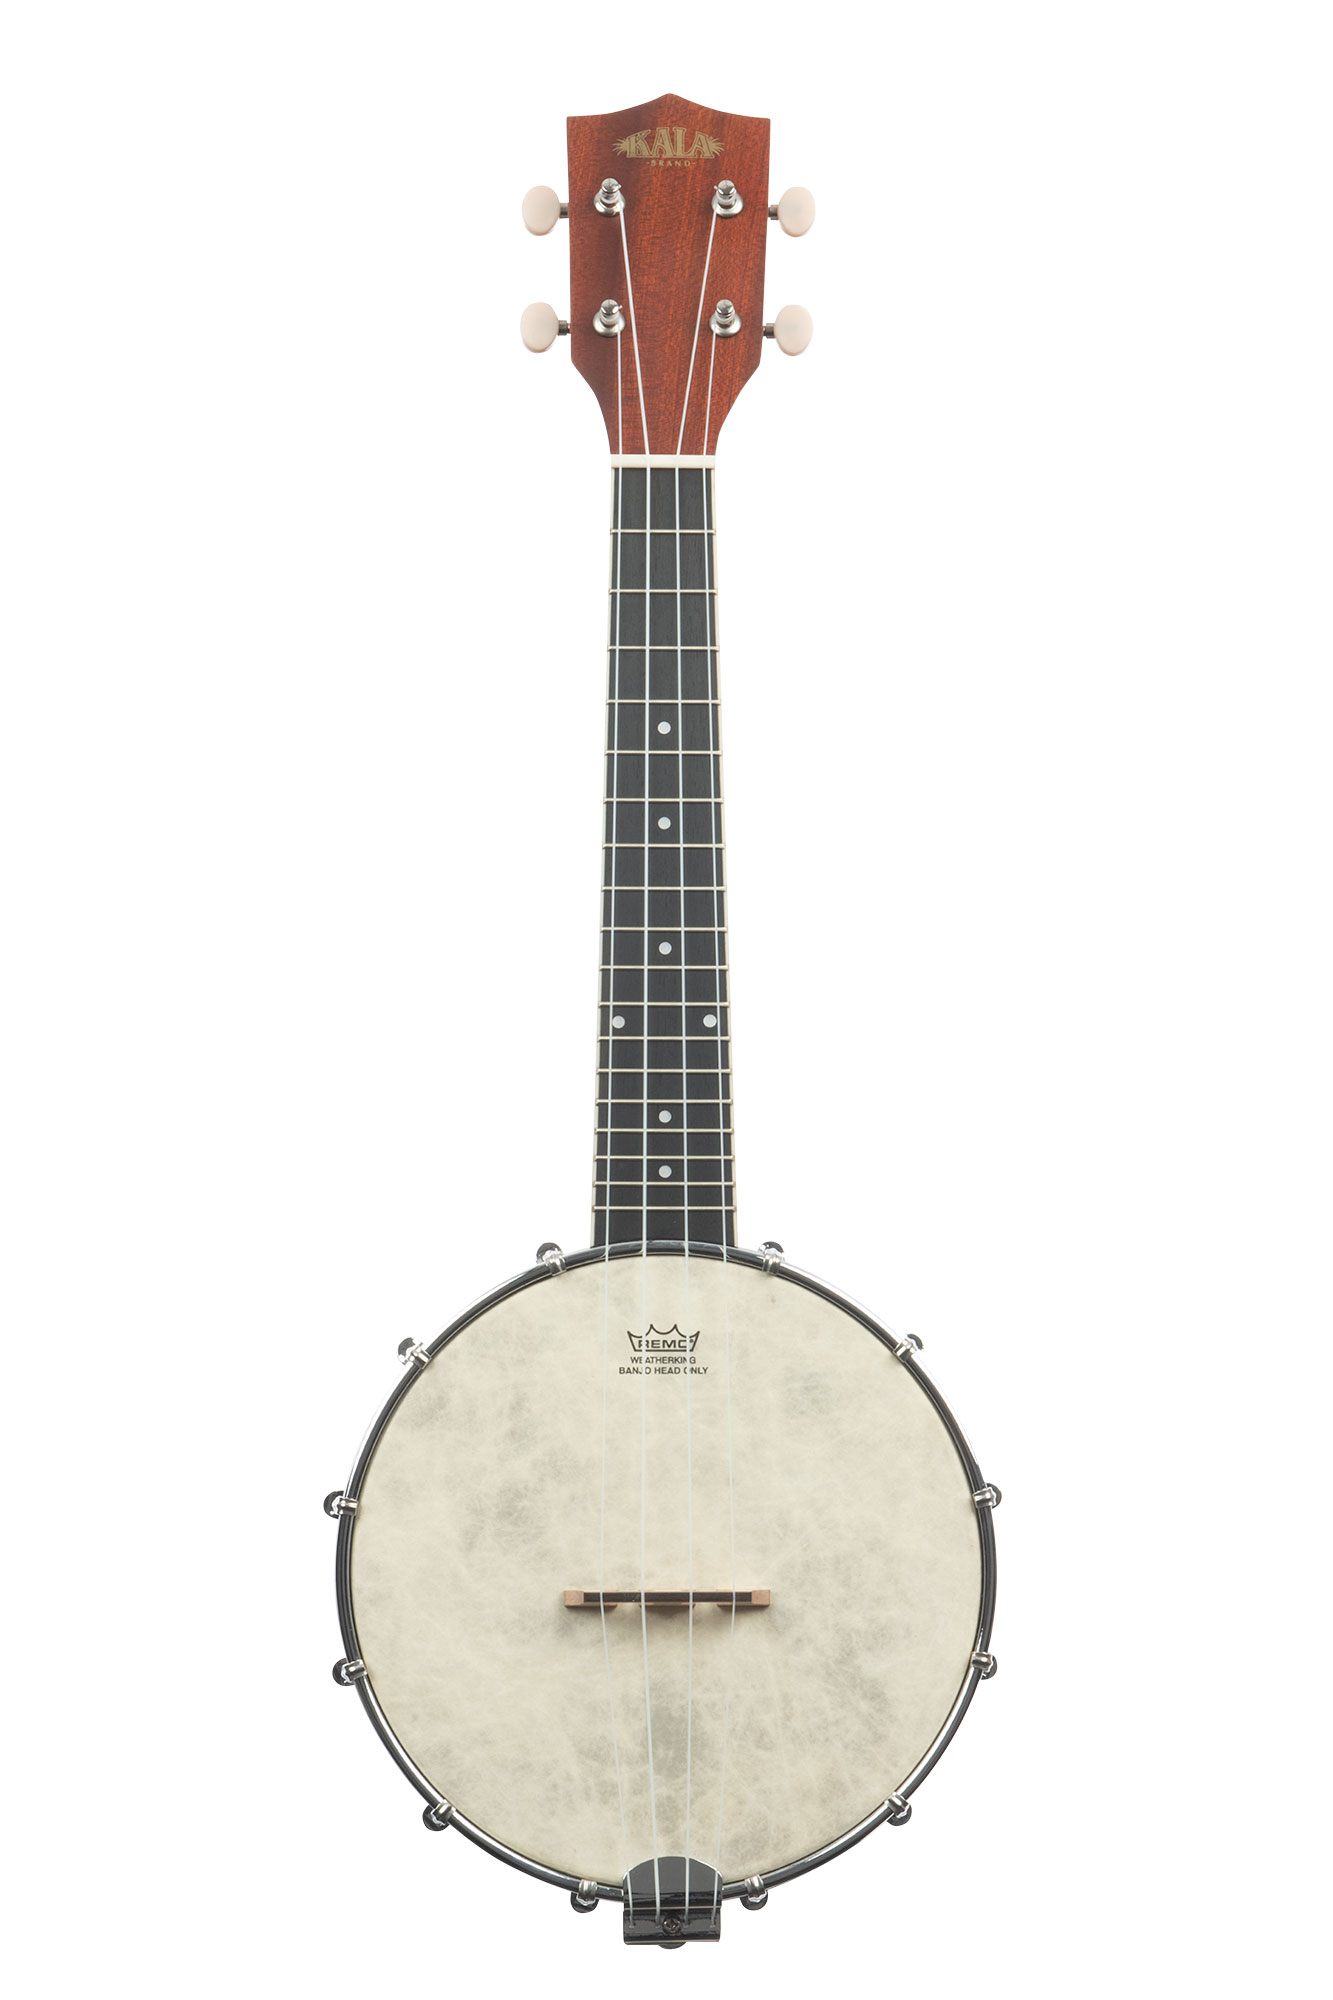 KALA のバンジョーウクレレは、1920 ～ 30 年代にアメリカで流行したバンジョー・レレ（banjolele）という楽器のデザインを踏襲した楽器です。 スケール長はコンサートサイズとウクレレに近い設計になっています。 ナチュラル・マホガニー・バンジョー・コンサート・ウクレレは、ブラックメイプルモデルよりも素朴なルックスながらバンジョレレの魅力を低価格で存分に味わえます。 Remo Weatherking バンジョーヘッド、ナチュラルマホガニーバック＆サイド、フローティングブリッジを採用しておりバンジョーウクレレ専用のカスタムギグバッグが付属しています。 【SPECS】 SIZE Concert HEAD Remo Weatherking BACK & SHELL Five-Ply Mahogany BINDING N/A FINISH Stained Satin Mahogany NECK Mahogany NUT Graphtech Nubone (Natural) HEADSTOCK Banjo Standard STRINGS Aquila Super Nylgut /_/_/_/♪出荷前調整のご要望承ります♪_/_/_/_/ ギタープラネットではご注文頂いた商品は 新品中古問わず検品・調整してから出荷致します。 弦高などの細かなセッティング等、お好みに 合わせての調整も可能ですので、お気兼ねなく お申し付けくださいませ。 /_/_/_/_/_/_/_/_/_/_/_/_/_/_/_/_/_/_/_/_/_/_ お問い合わせフリーダイヤル：0120-37-9630　